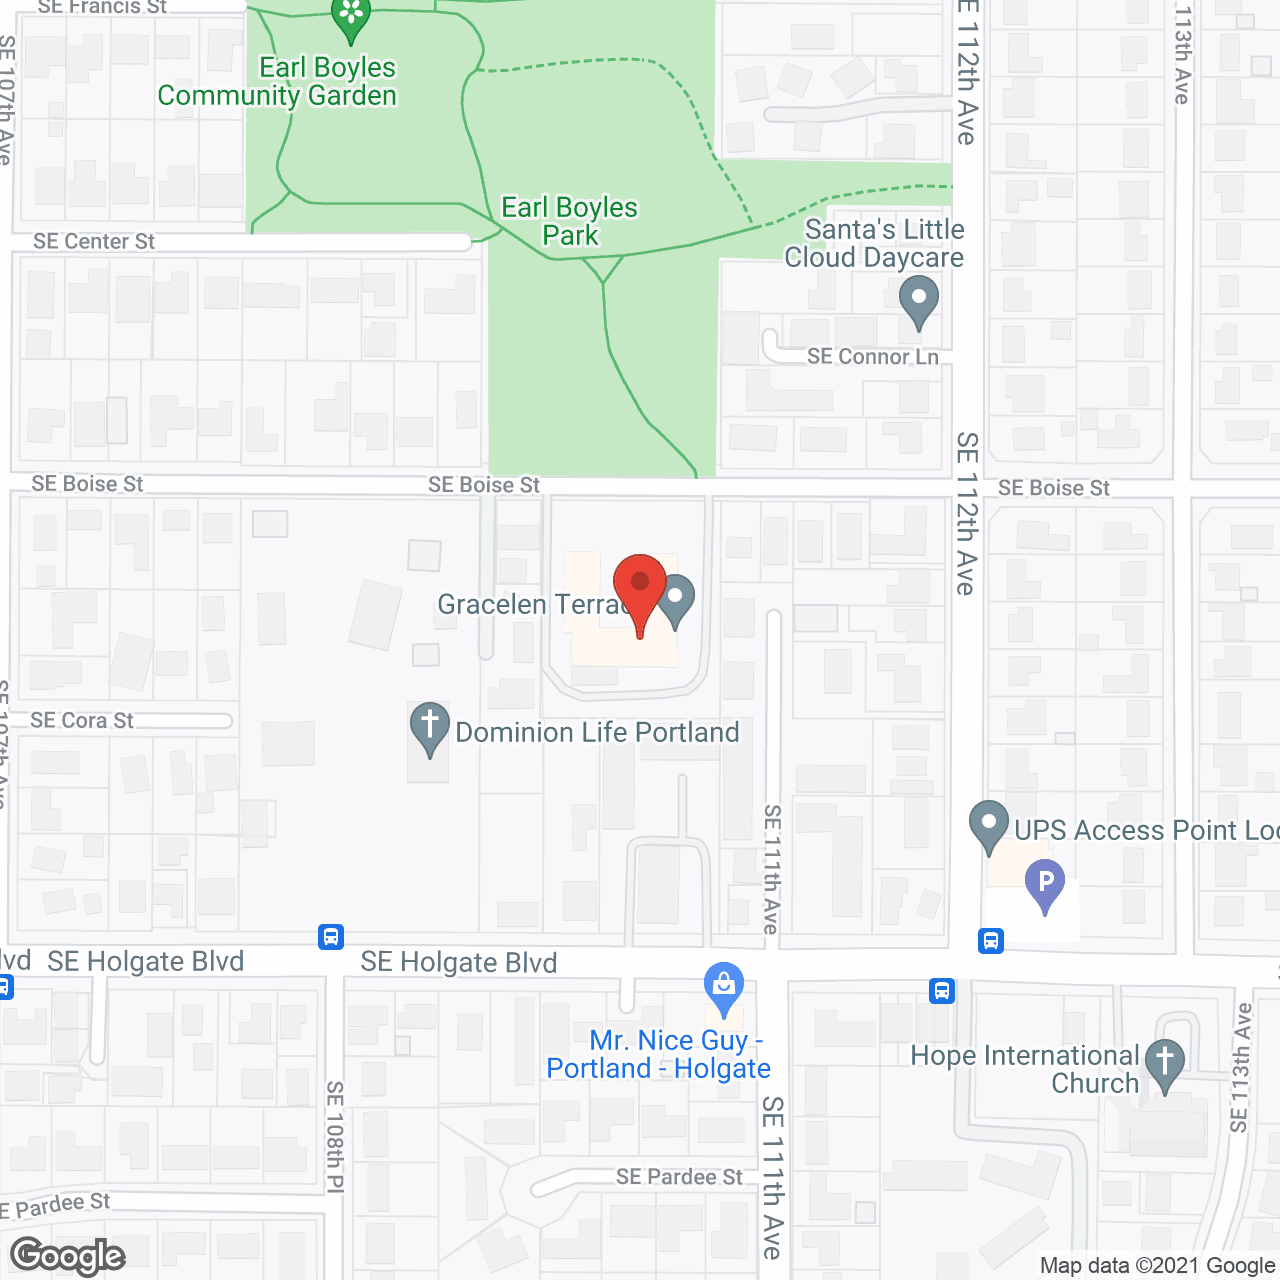 Gracelen Terrace in google map